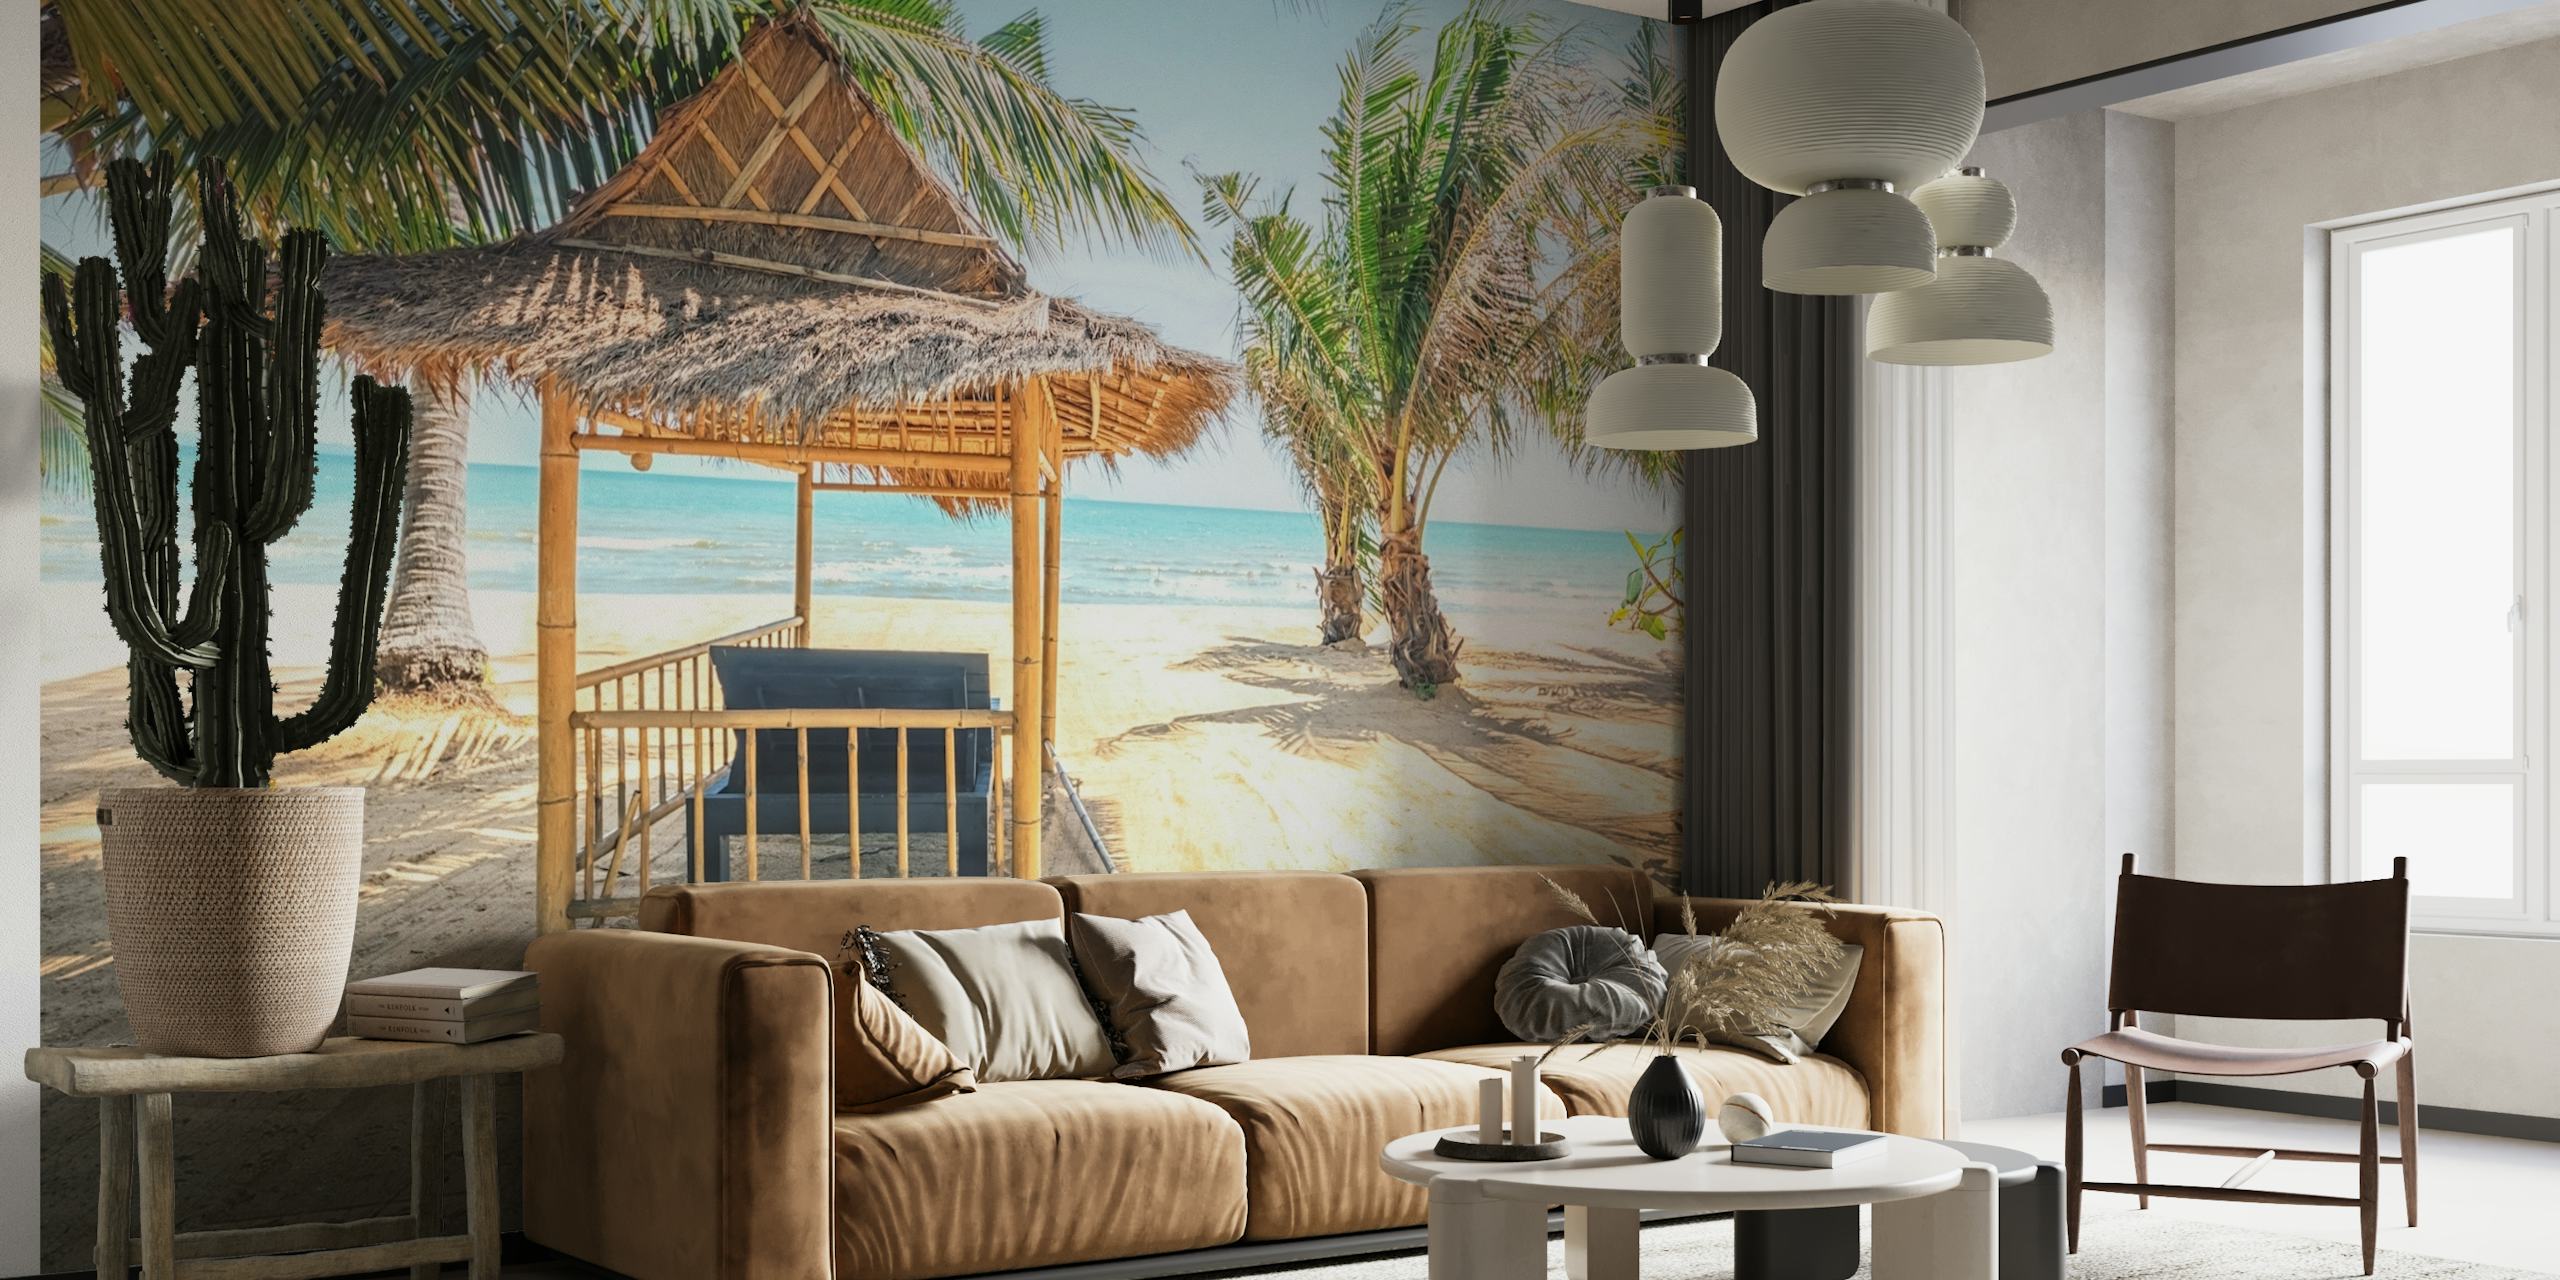 Halmtak stuga på en sandstrand med palmer och havsutsikt väggmålning